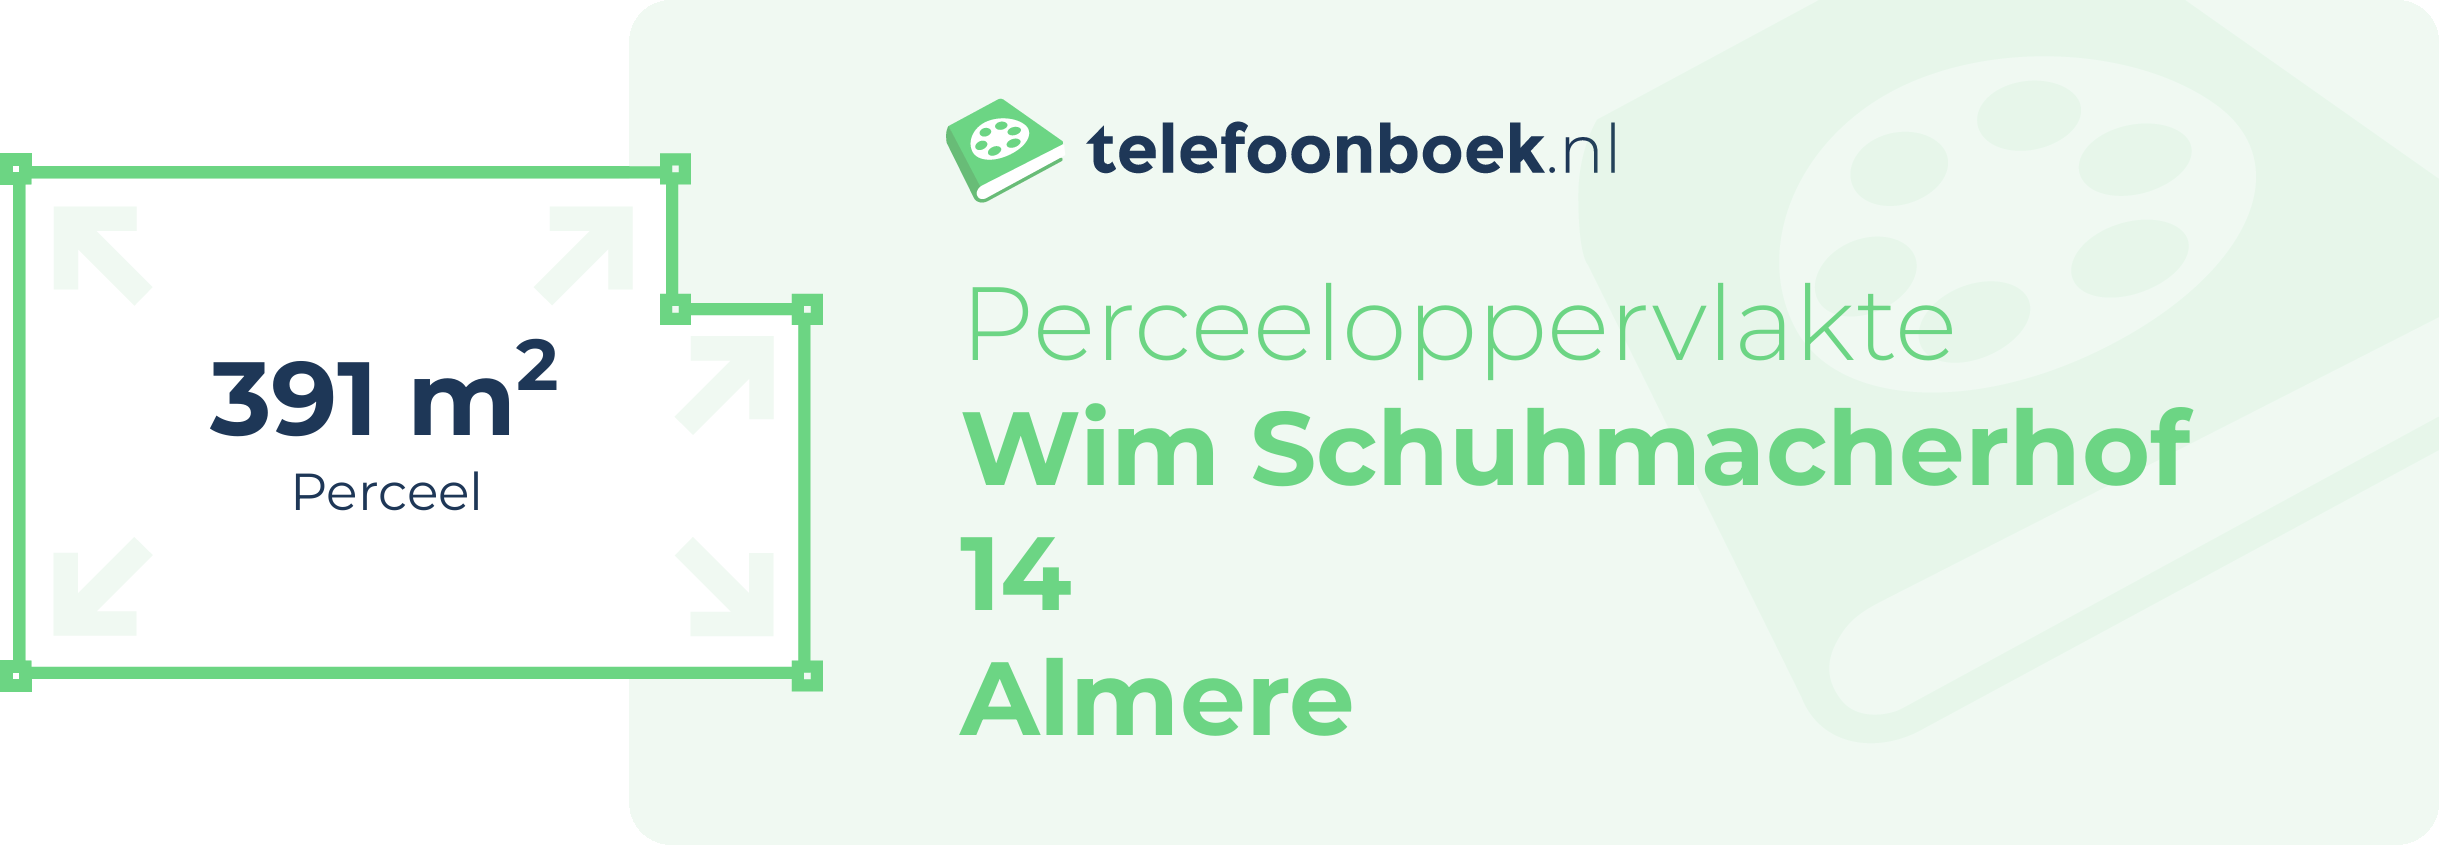 Perceeloppervlakte Wim Schuhmacherhof 14 Almere